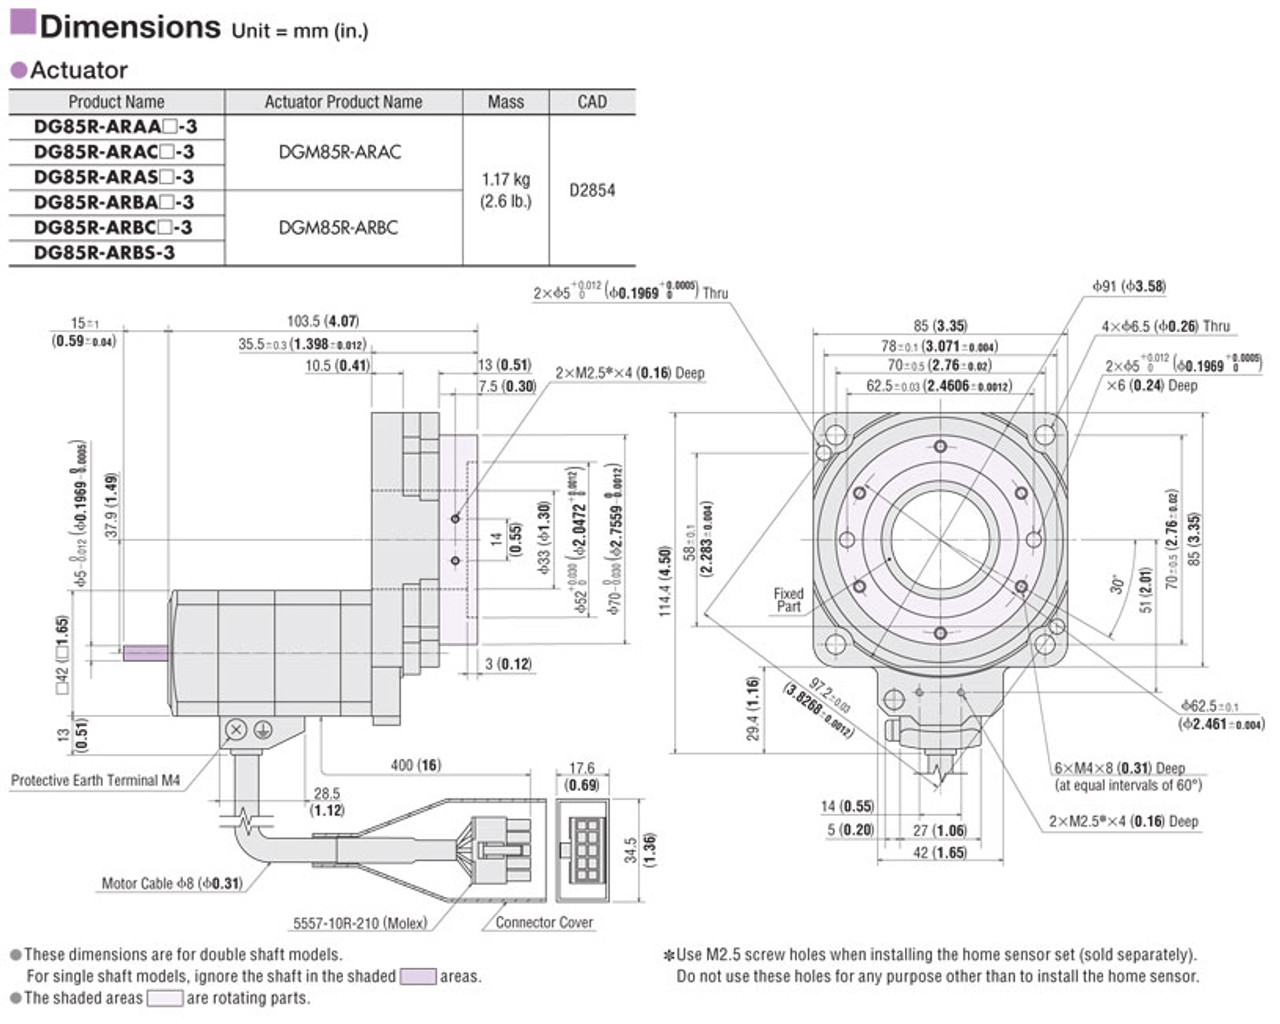 DGM85R-ARBC / ARD-A - Dimensions